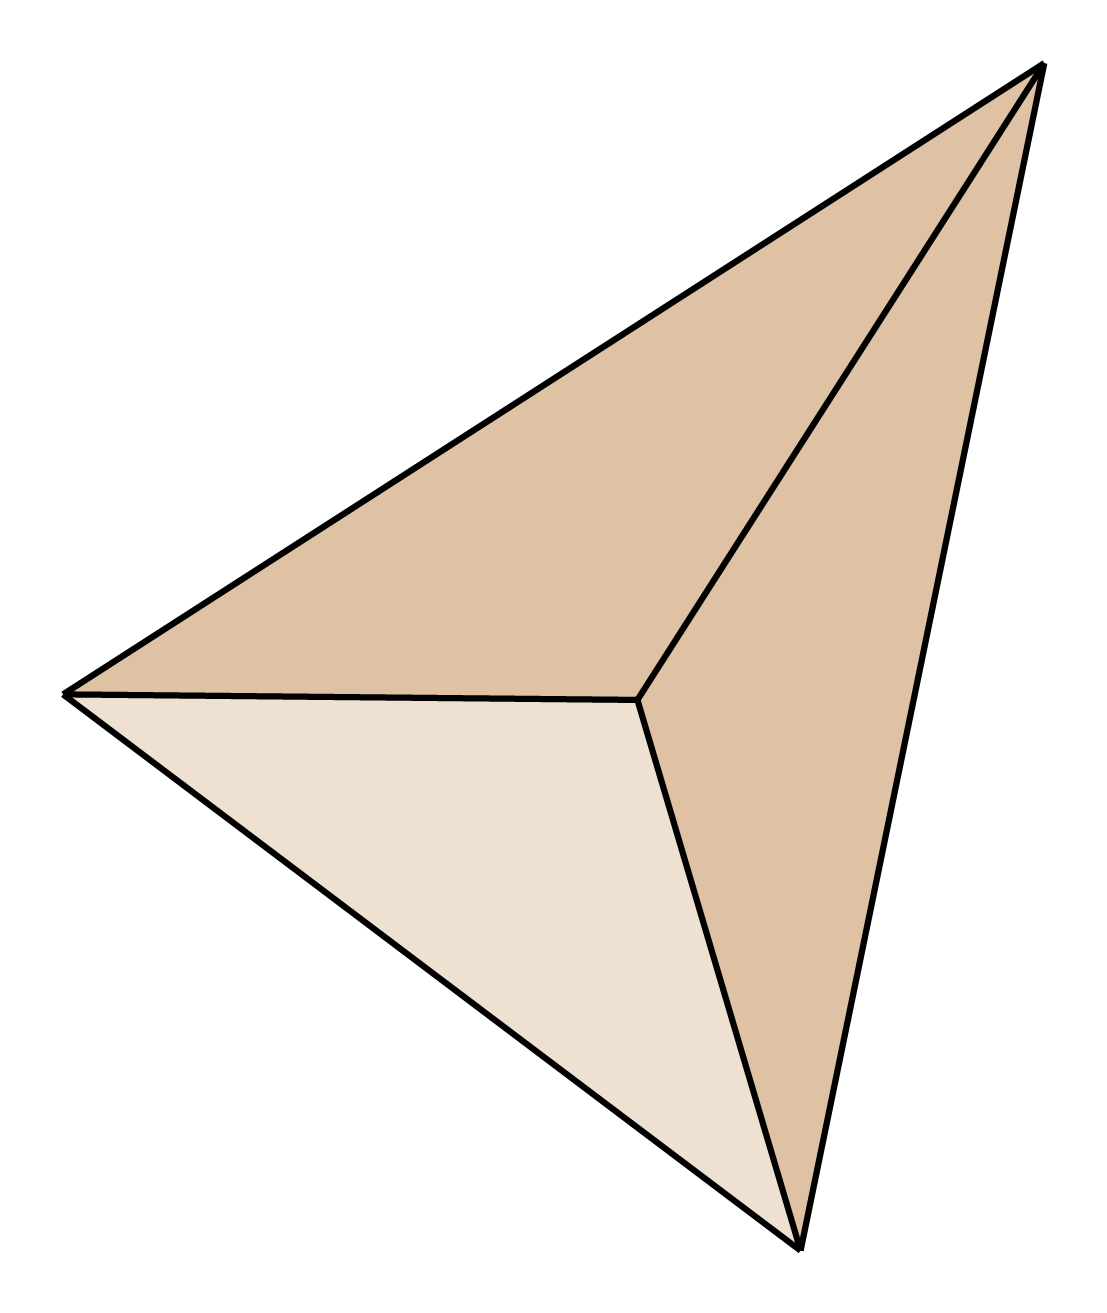 Slika prikazuje trostranu piramidu.